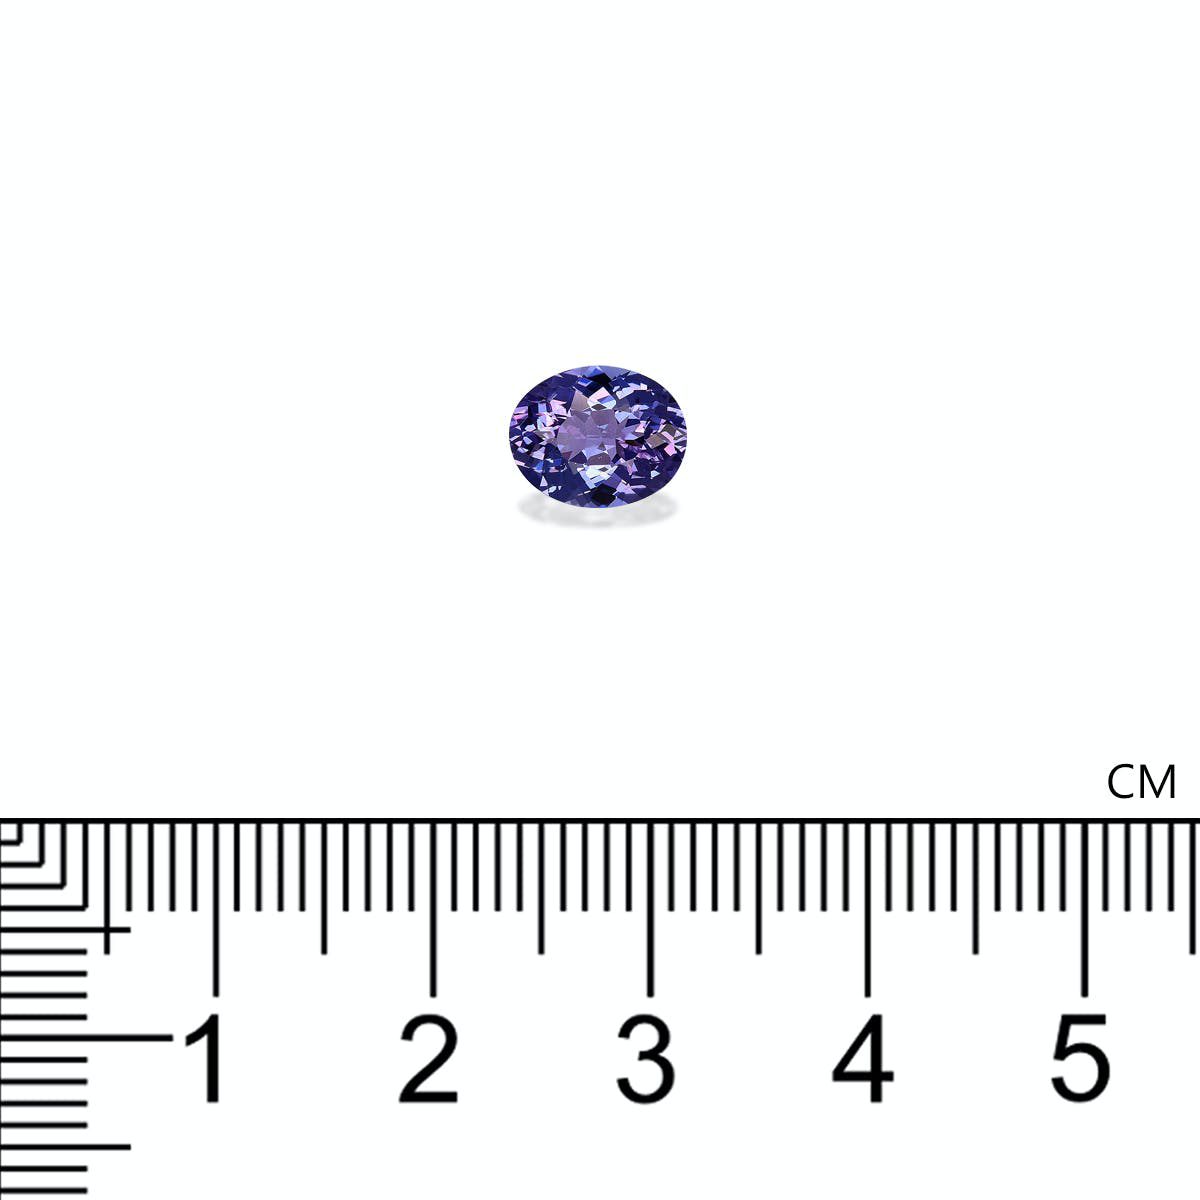 AA Violet Blue Tanzanite 1.36ct - 8x6mm (TN0827)